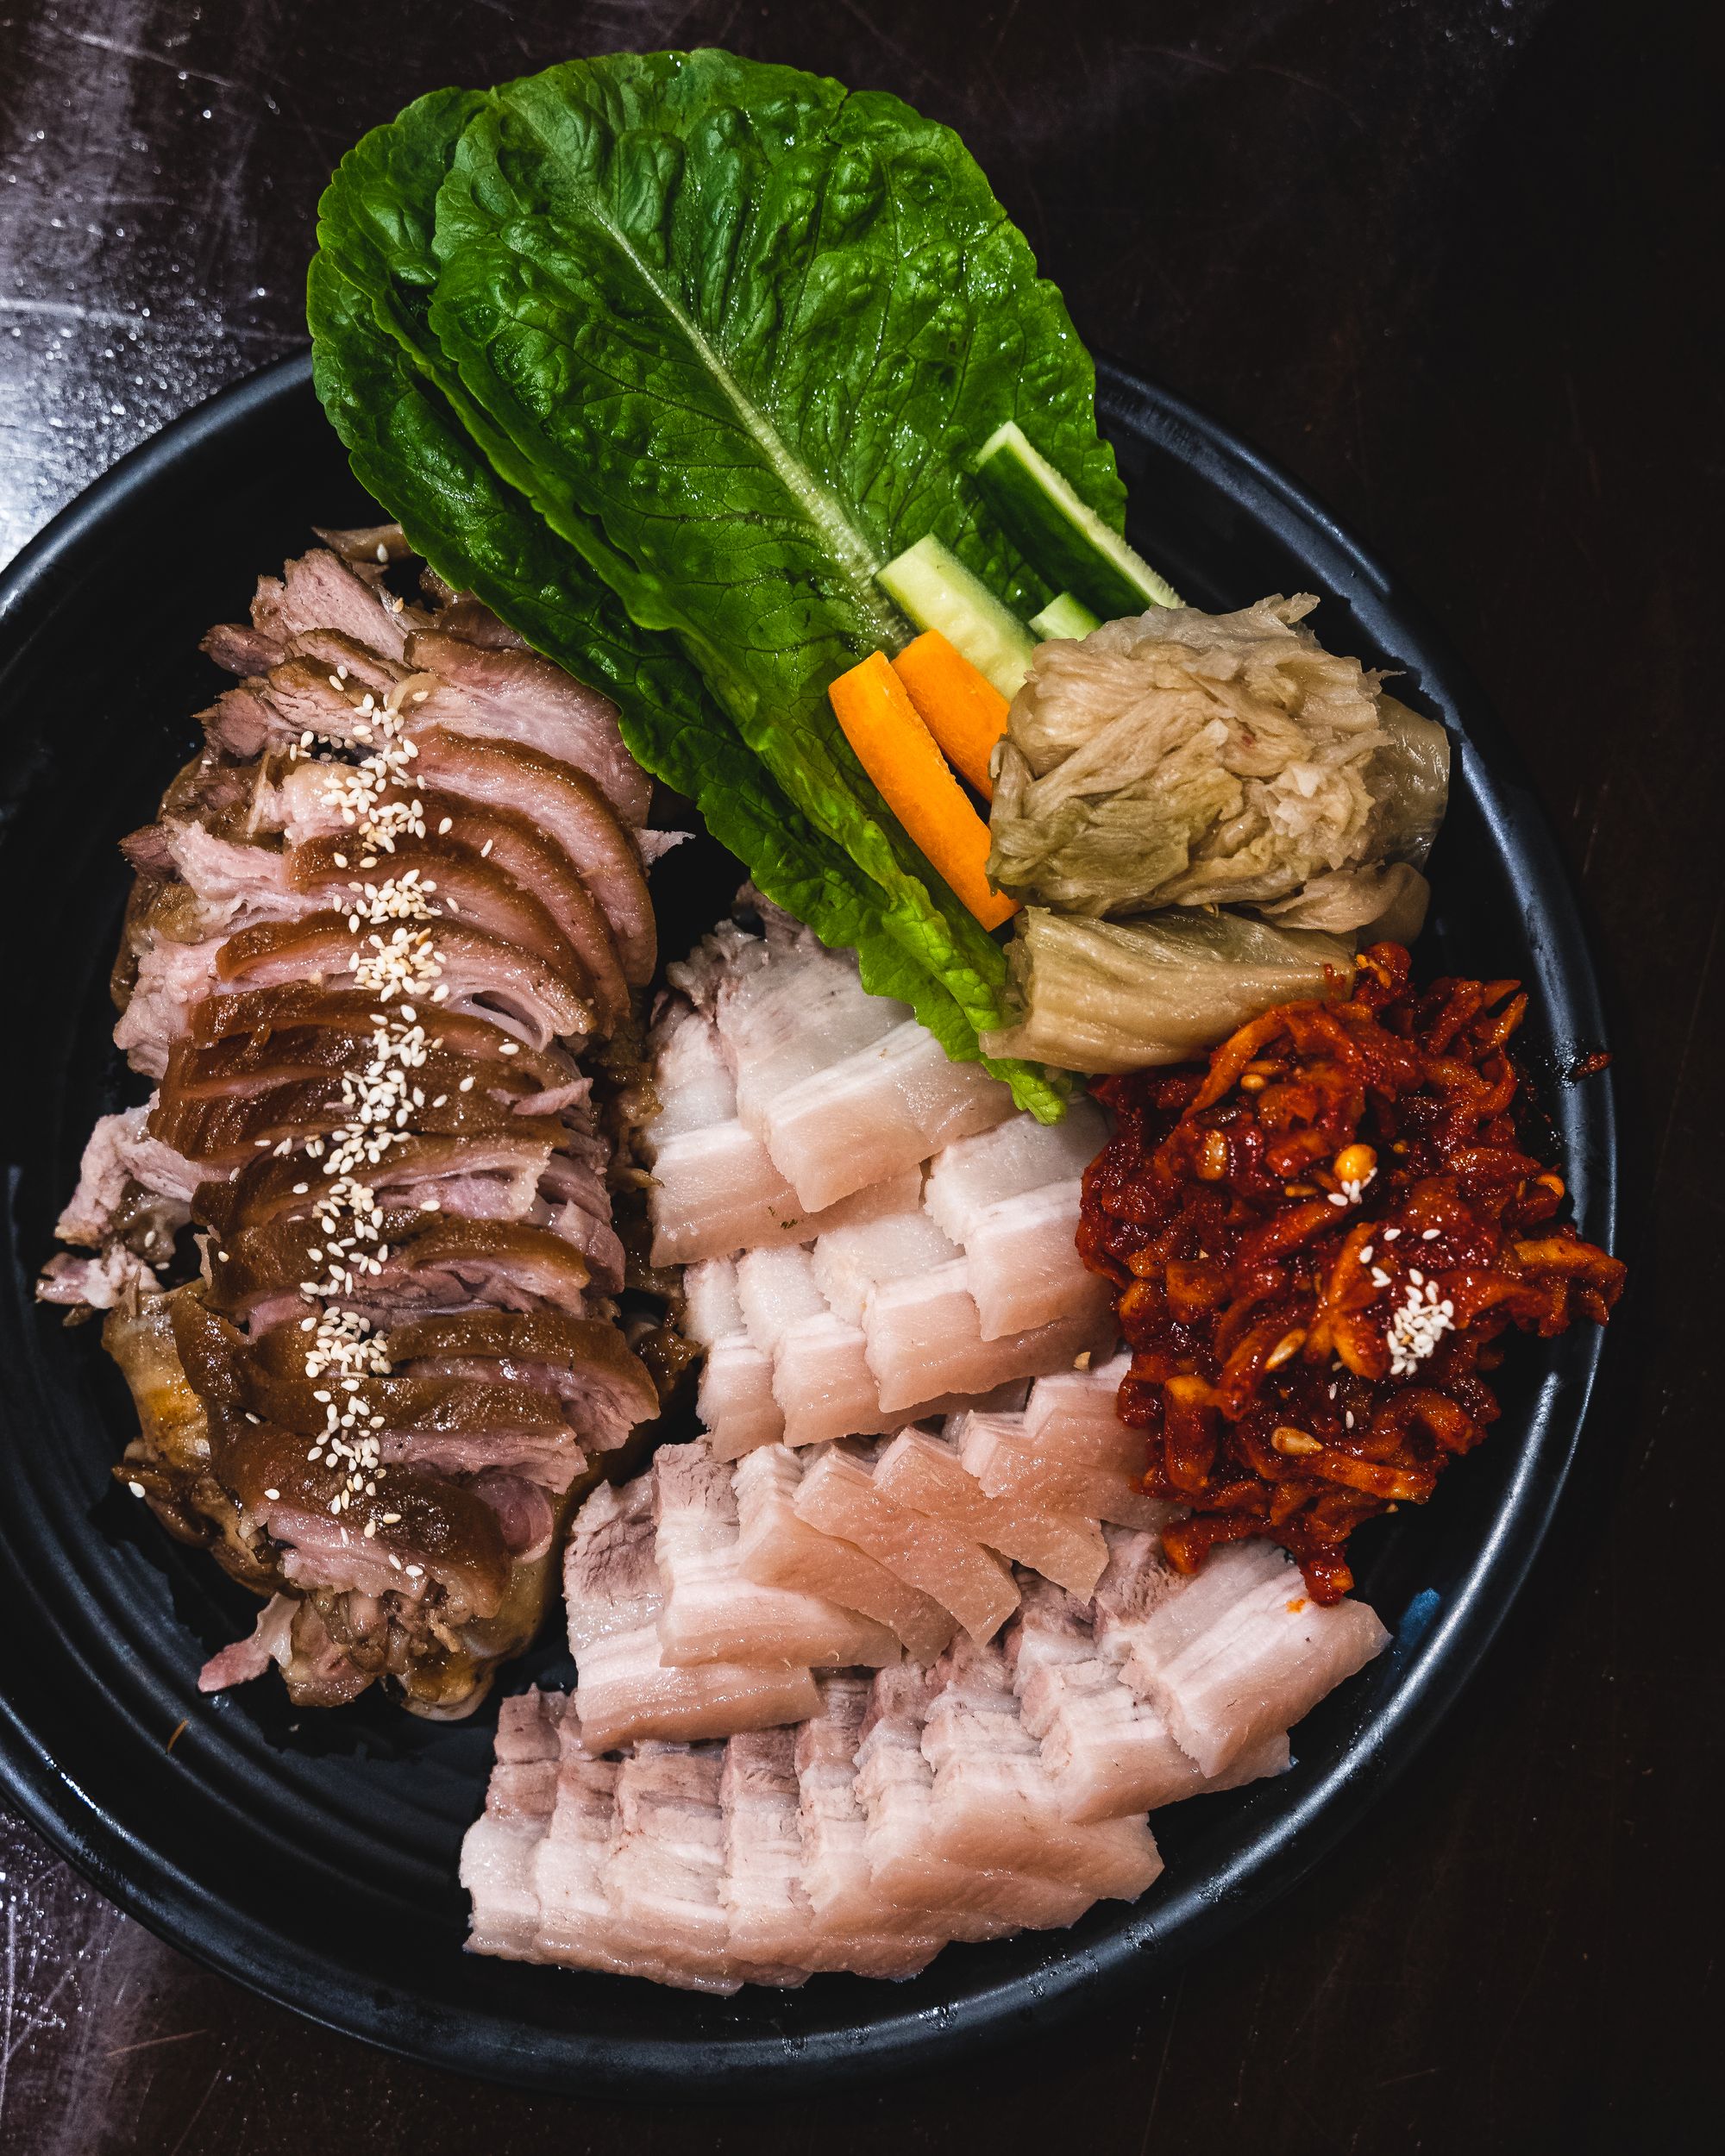 Korean bossam with sliced pork shoulder and fermented vegetables and leafy greens